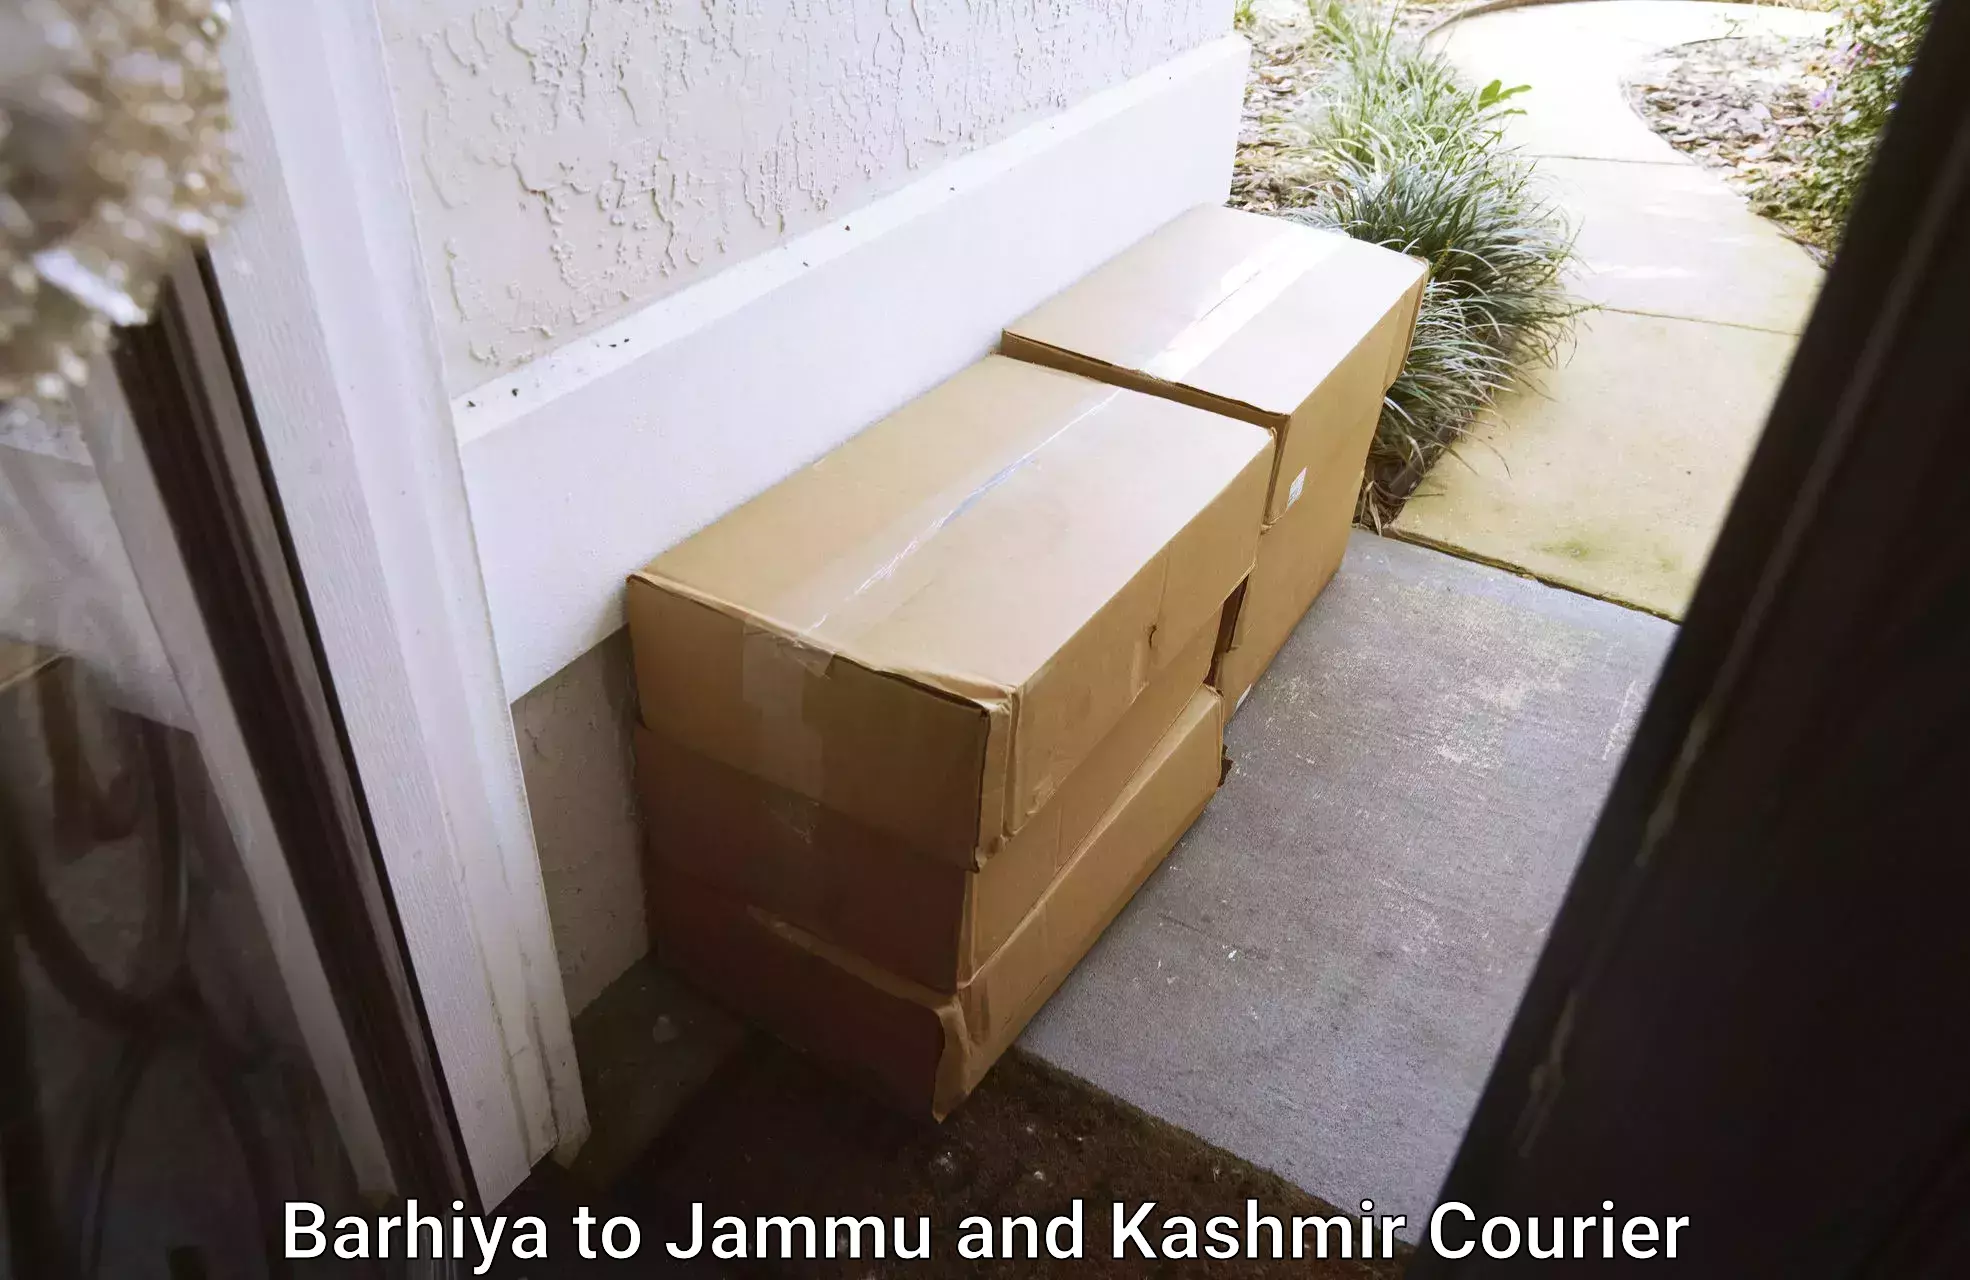 Quality moving company Barhiya to Jammu and Kashmir